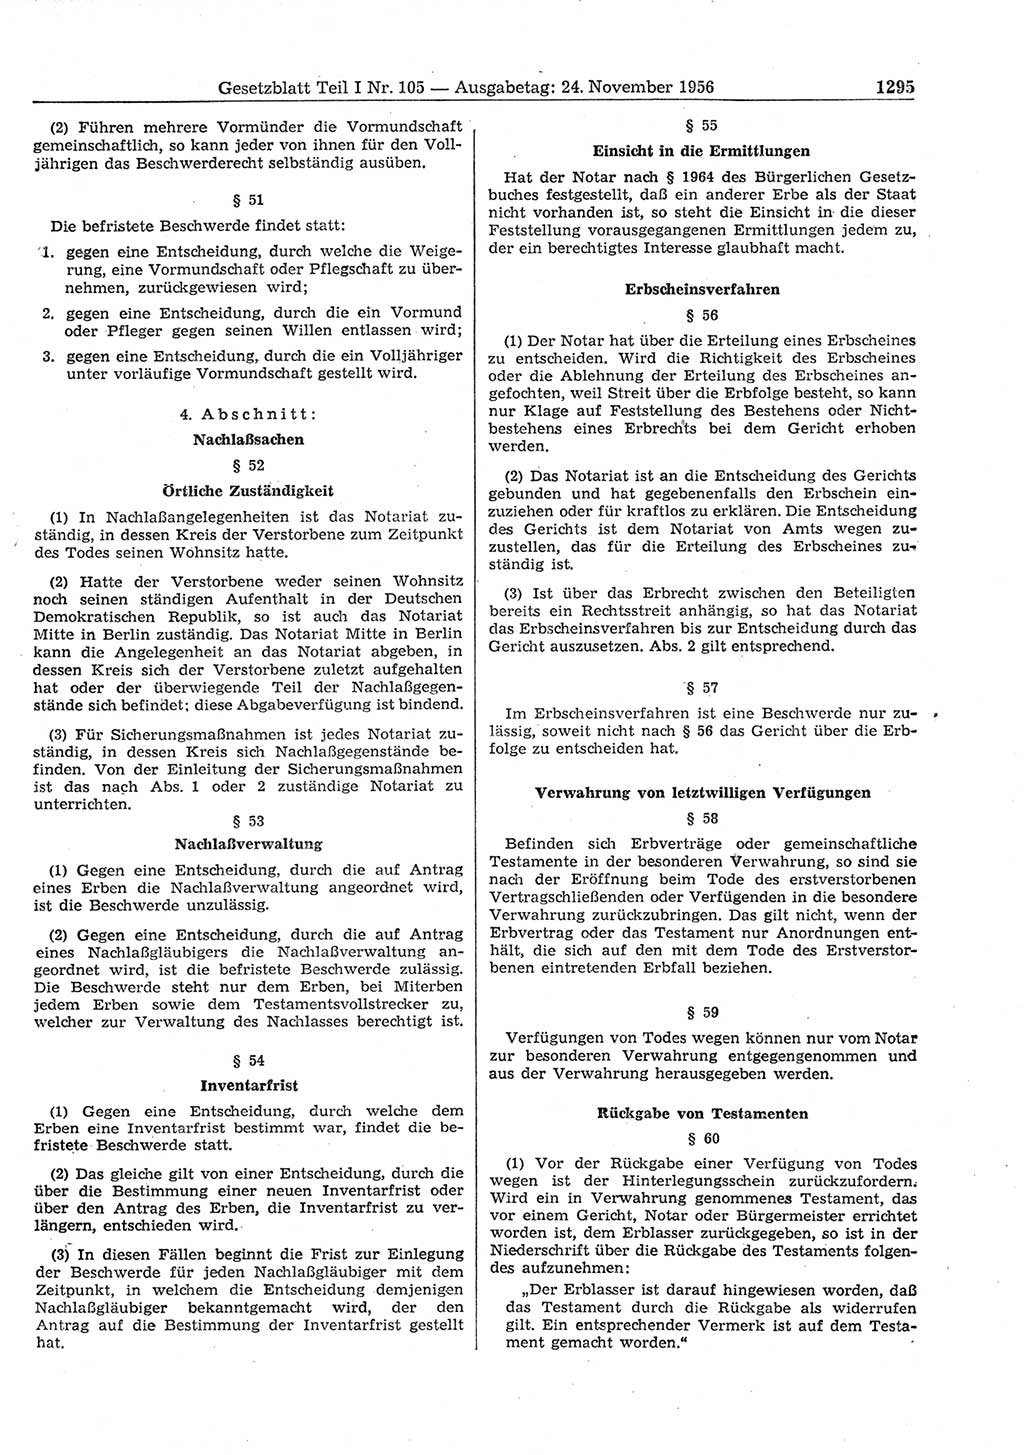 Gesetzblatt (GBl.) der Deutschen Demokratischen Republik (DDR) Teil Ⅰ 1956, Seite 1295 (GBl. DDR Ⅰ 1956, S. 1295)